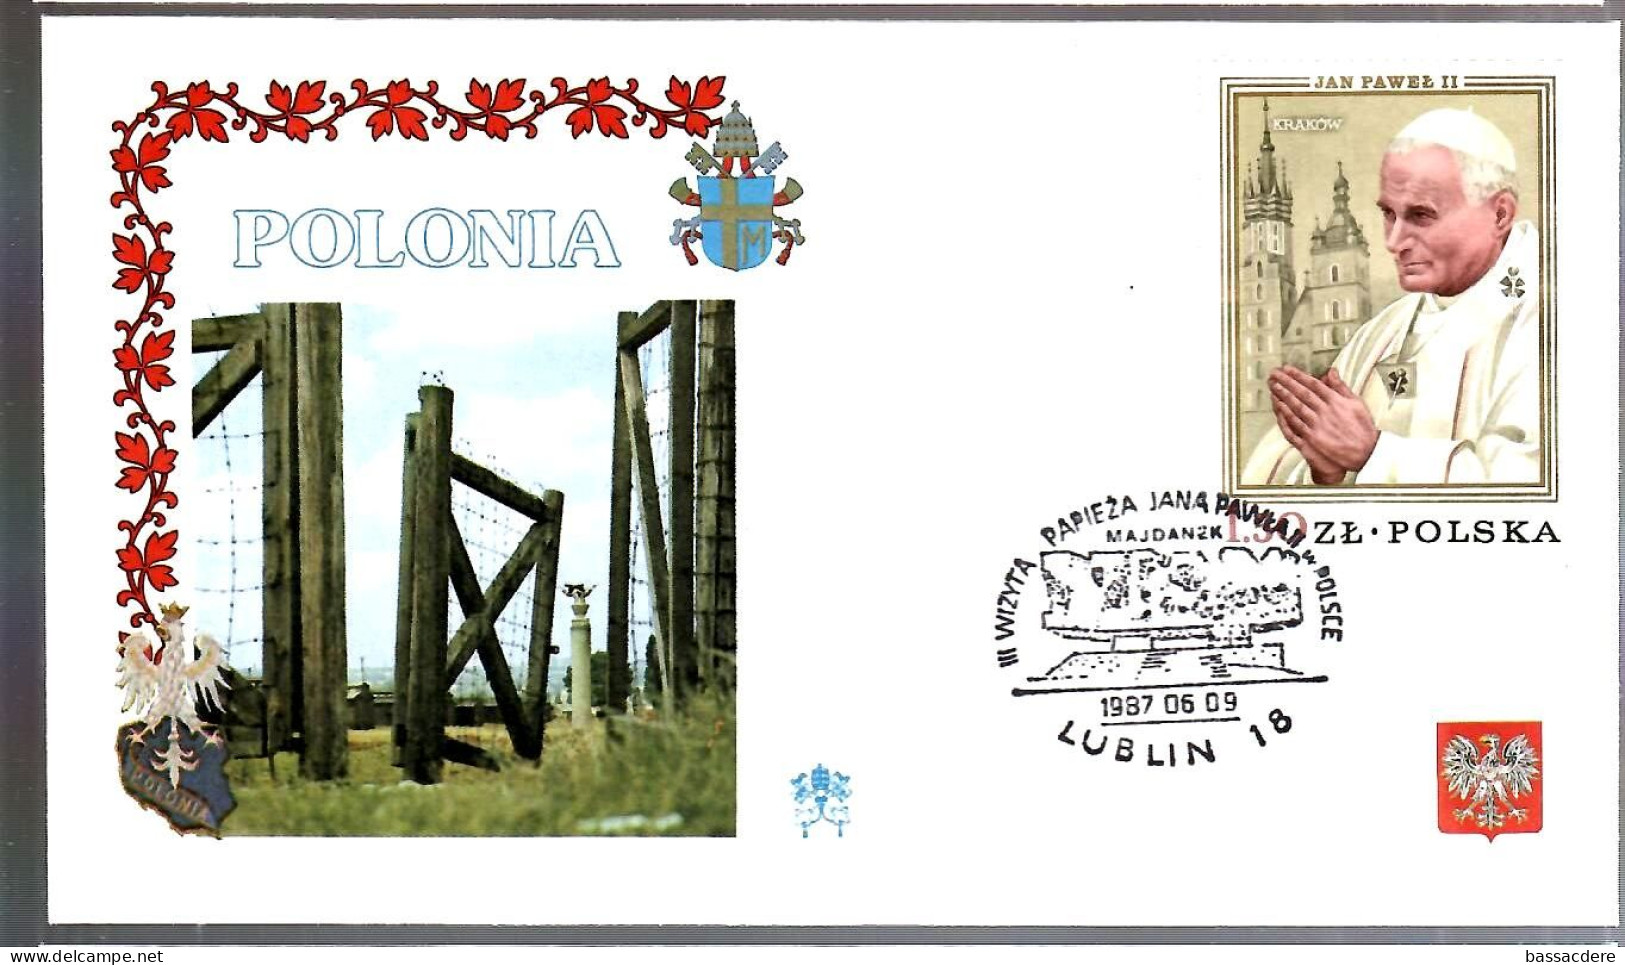 79497 - 10 enveloppes  pour  voyage  du Pape JEAN PAUL  II